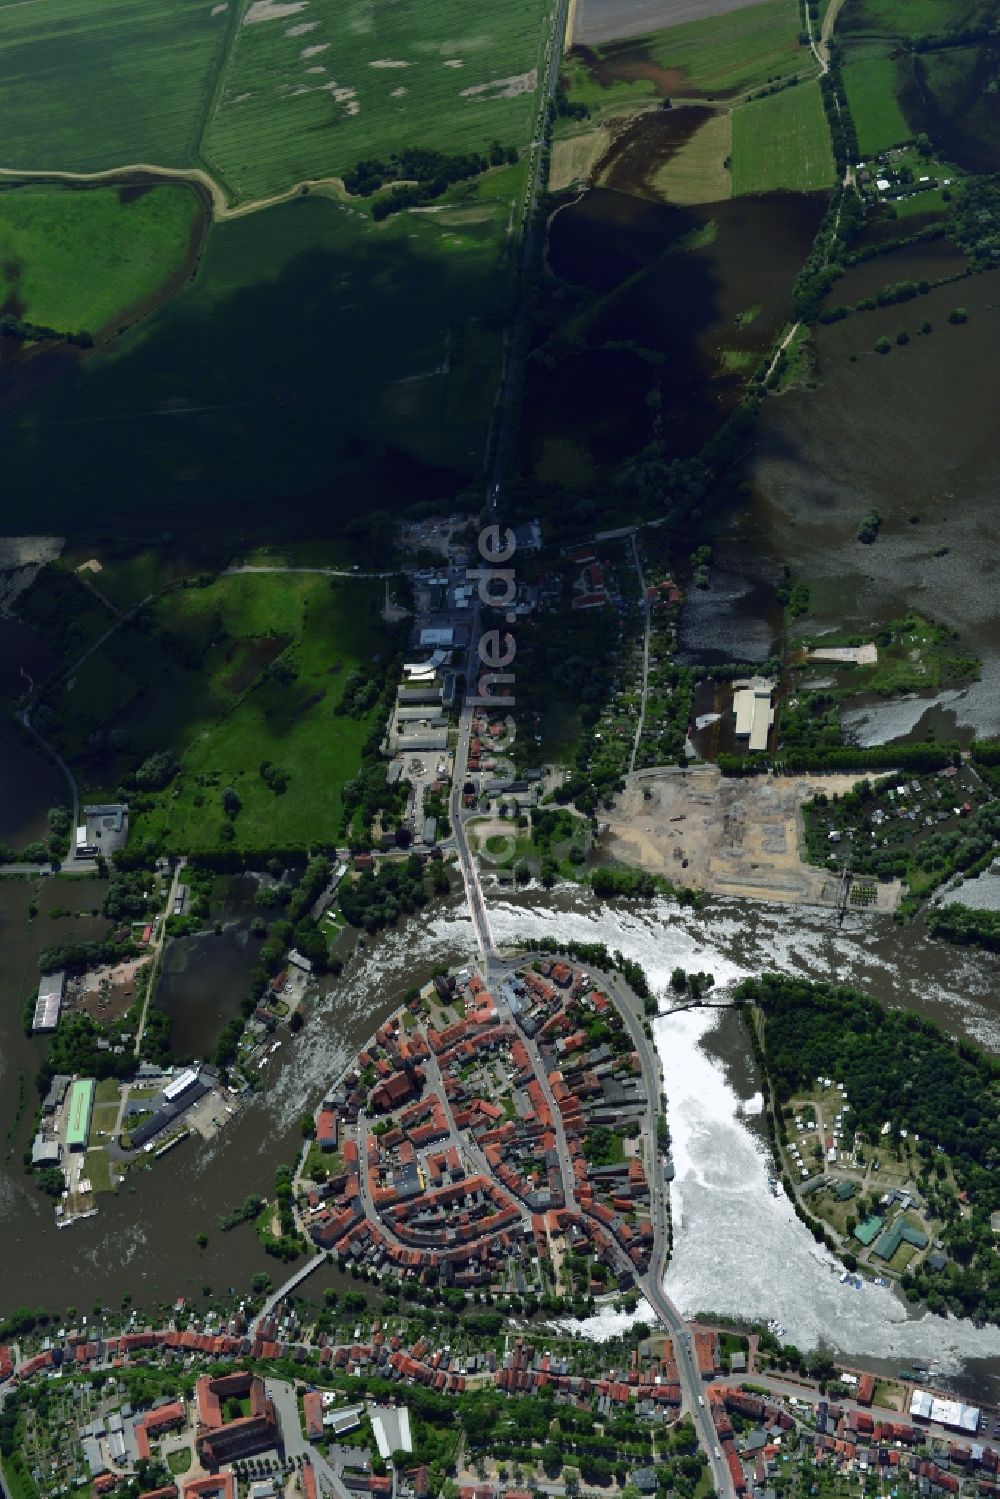 Hansestadt Havelberg von oben - Hochwasser Pegel - Situation durch Überschwemmung und Übertritt der Ufer der Elbe entland des Verlaufes bei der Hansestadt Havelberg im Bundesland Sachsen-Anhalt